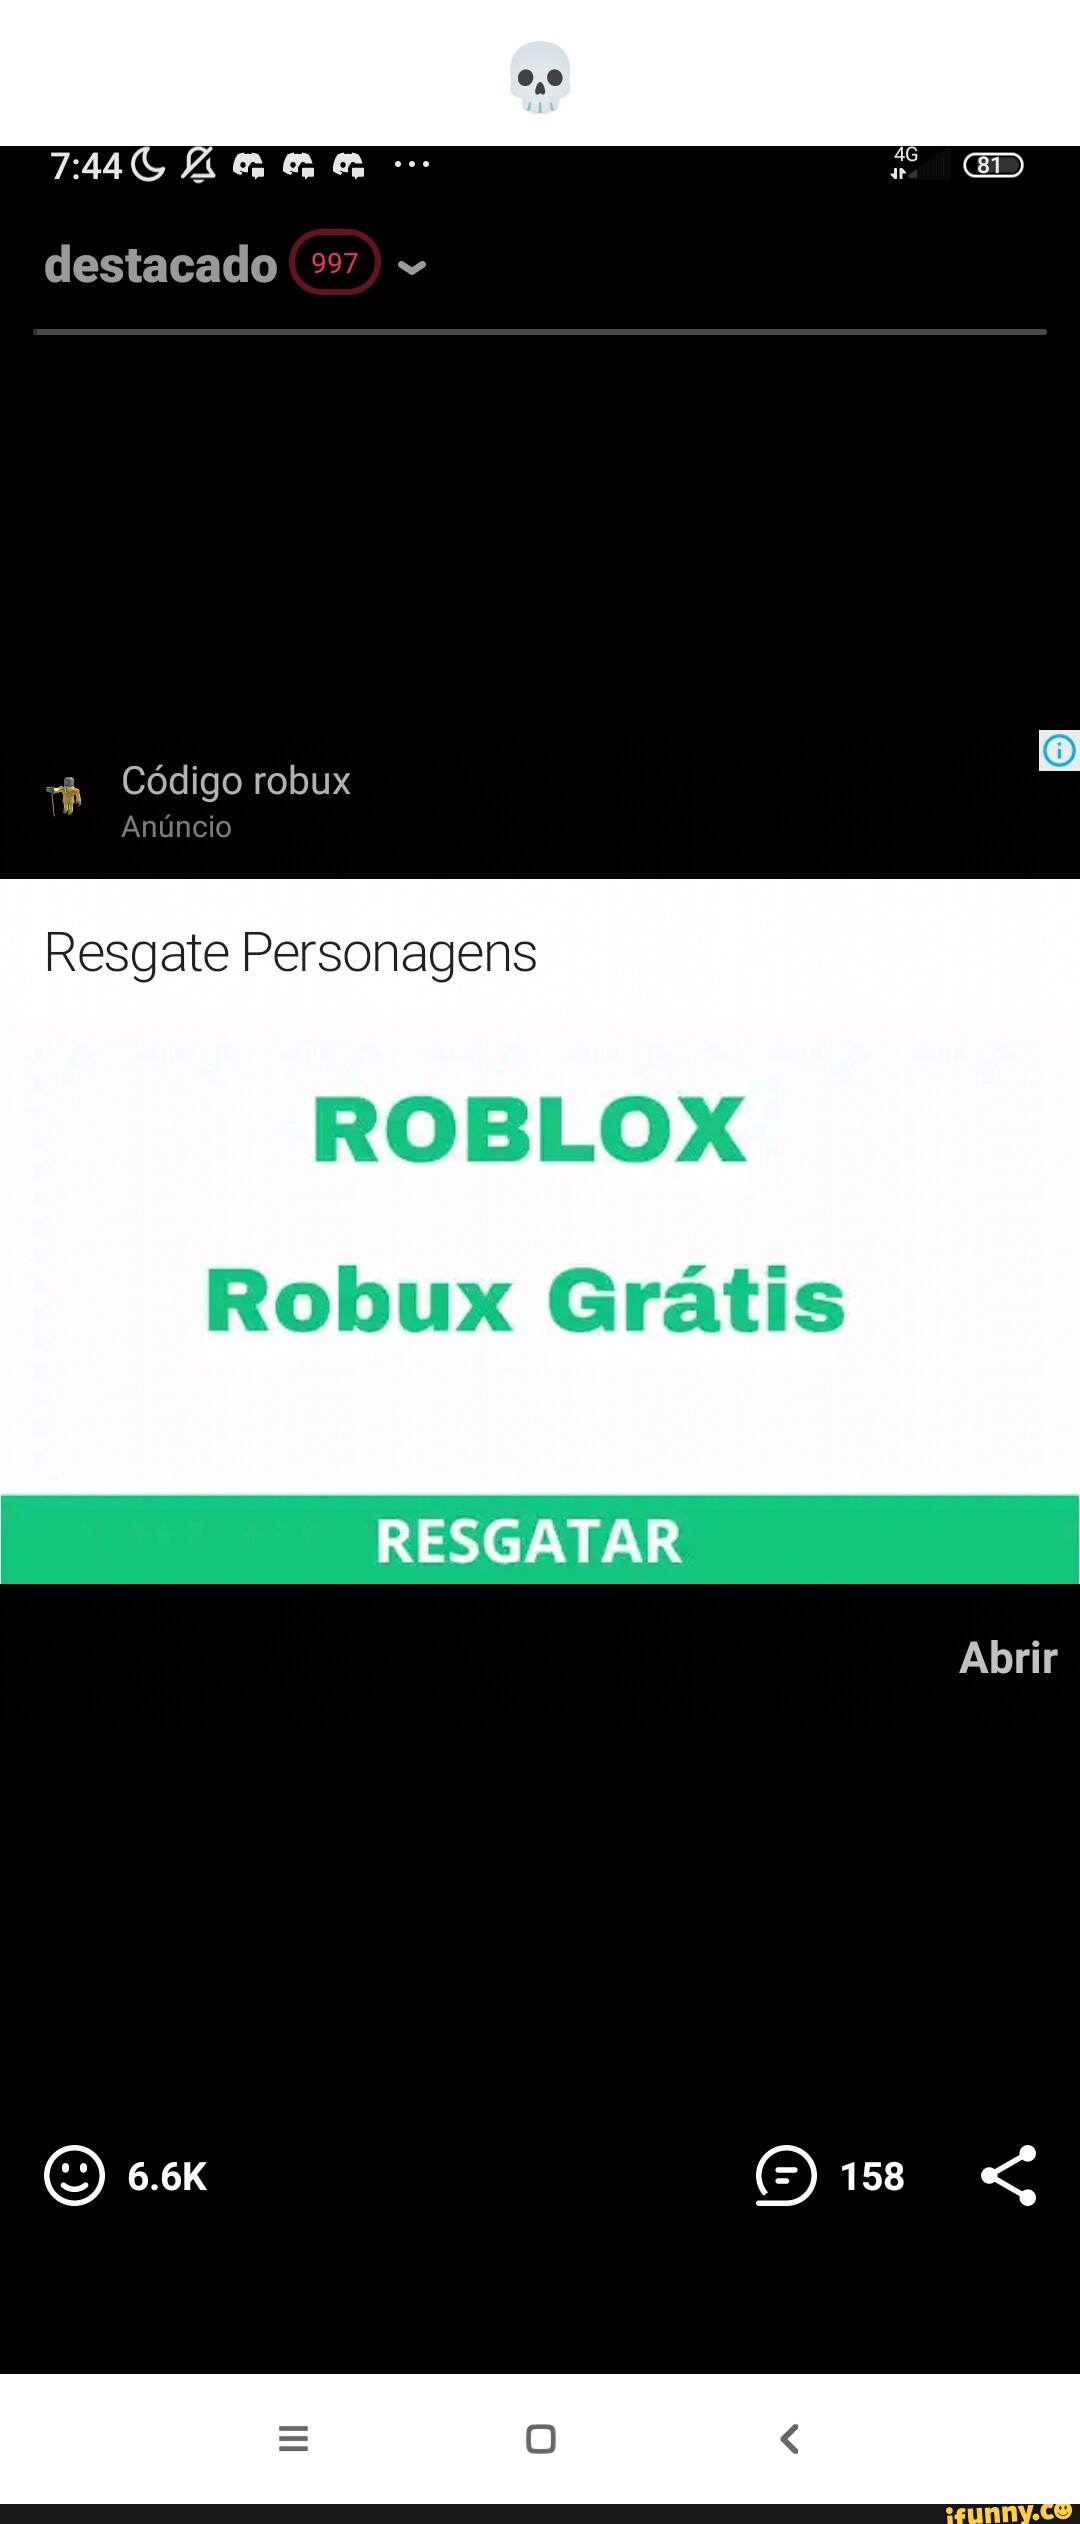 Ar destacado 997) Código robux Resgate Personagens ROBLOX Robux Grátis  RESGATAR 158 Abrir - iFunny Brazil